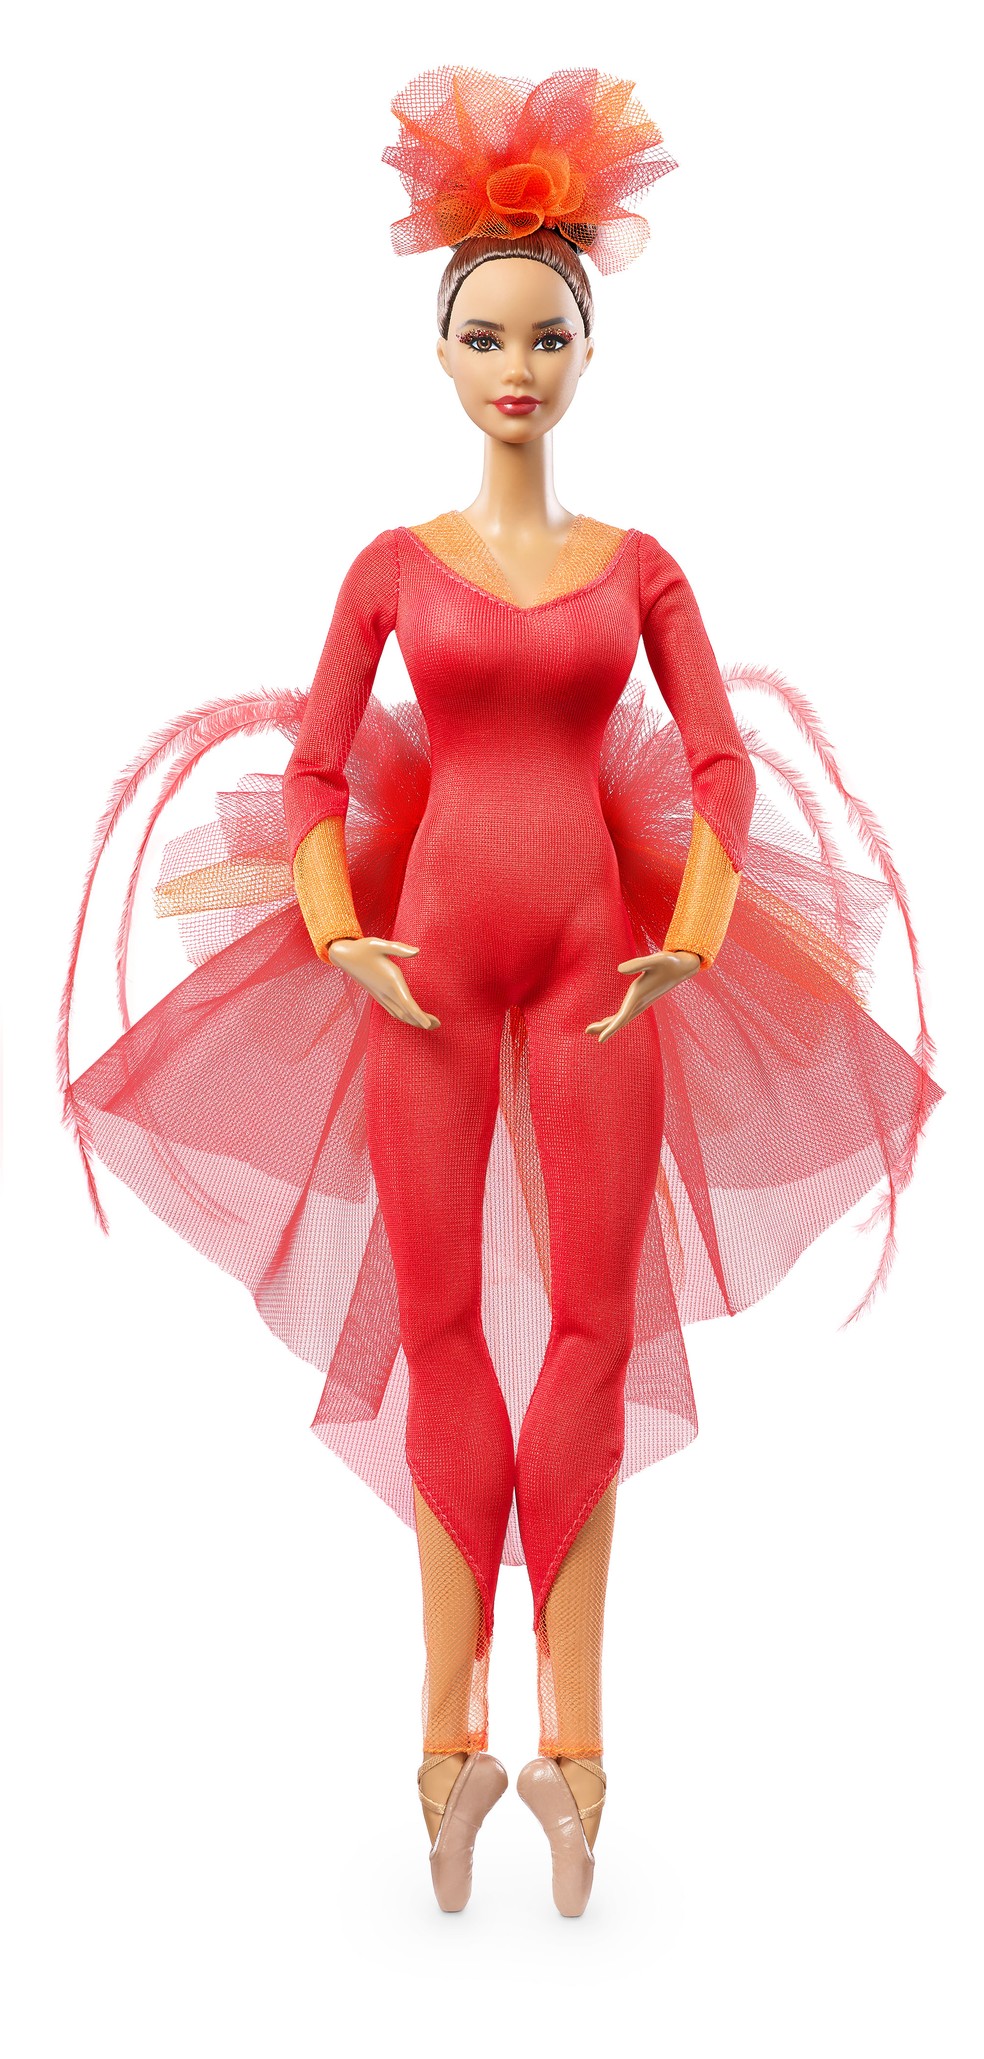 Barbie inspirada na bailarina Misty Copeland, a primeira bailarina principal negra do American Ballet Theatre — Foto: Divulgação/Mattel